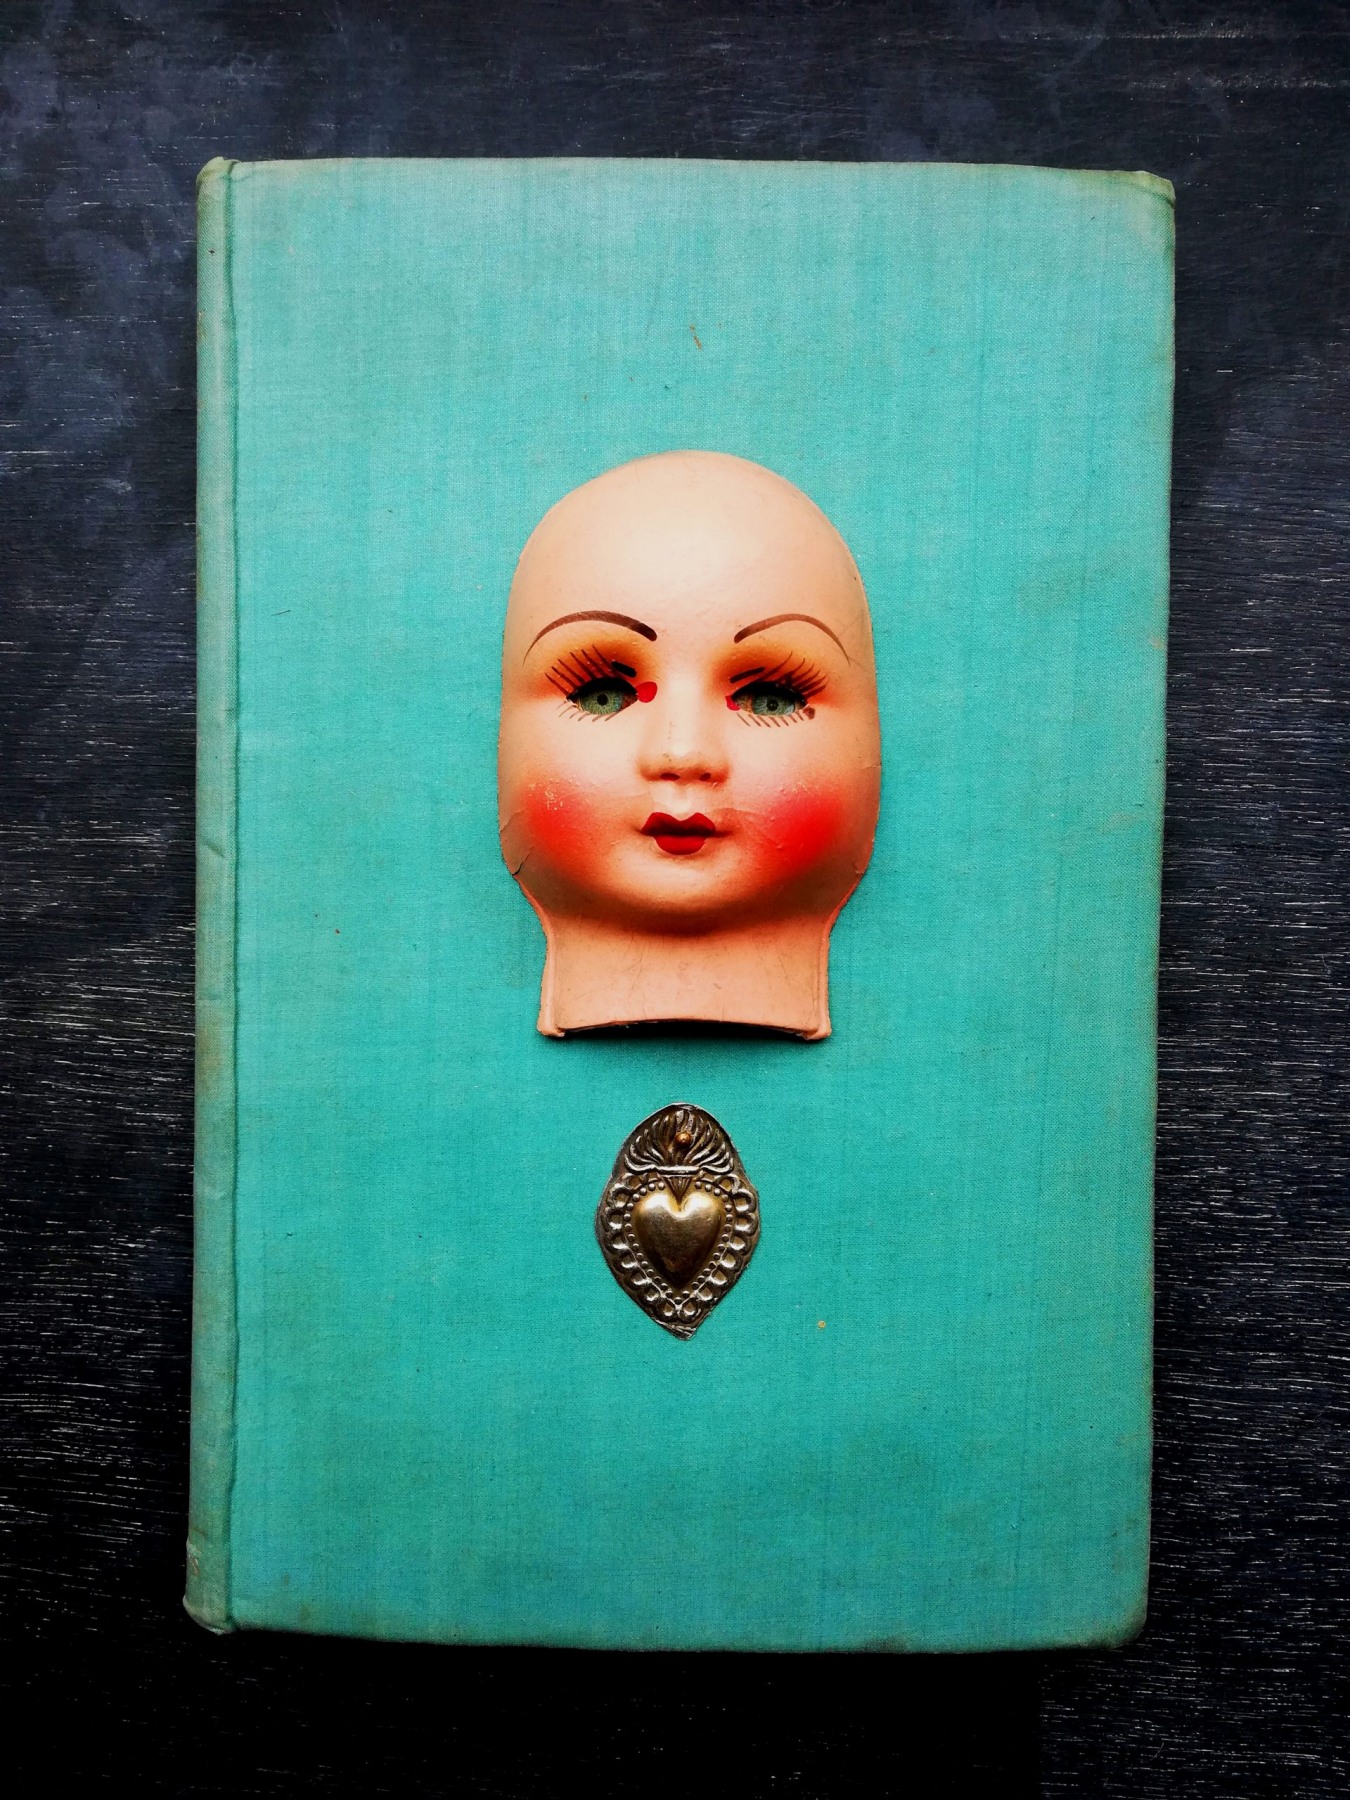 antique papiermache doll <br/> on vintage book <br/>14.5 x 22cm <br/>£150